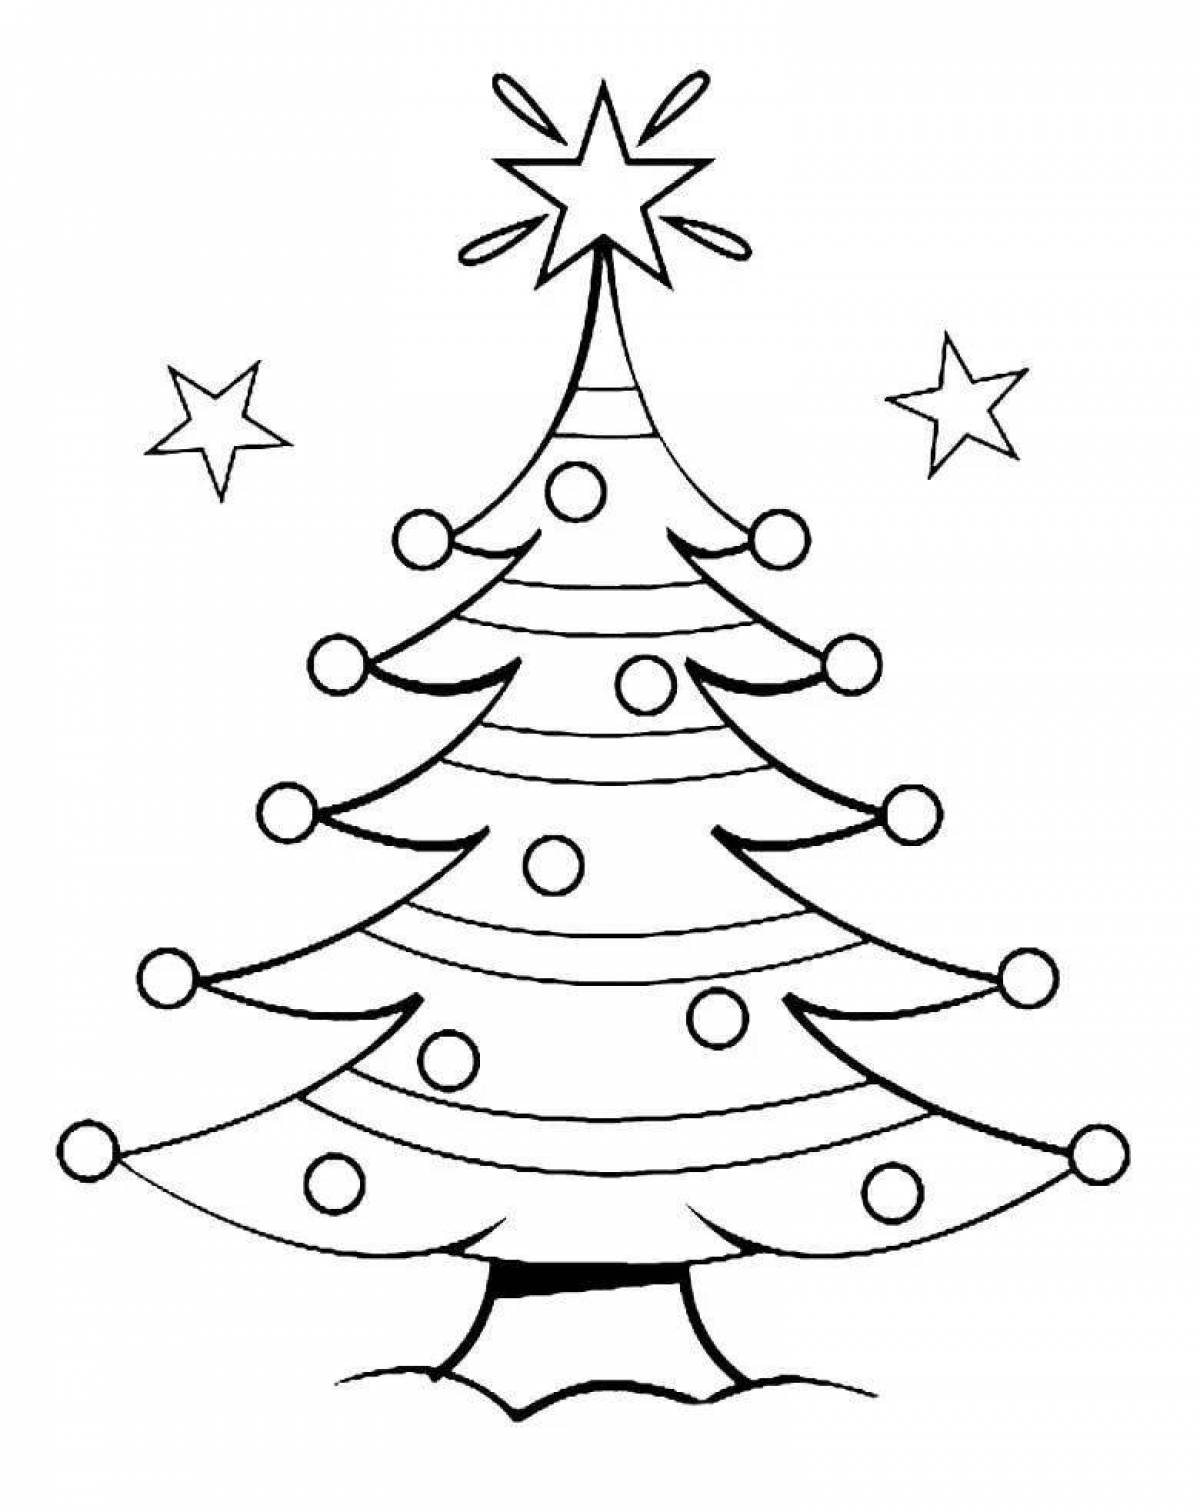 Великолепно раскрашенная страница раскраски рождественской елки